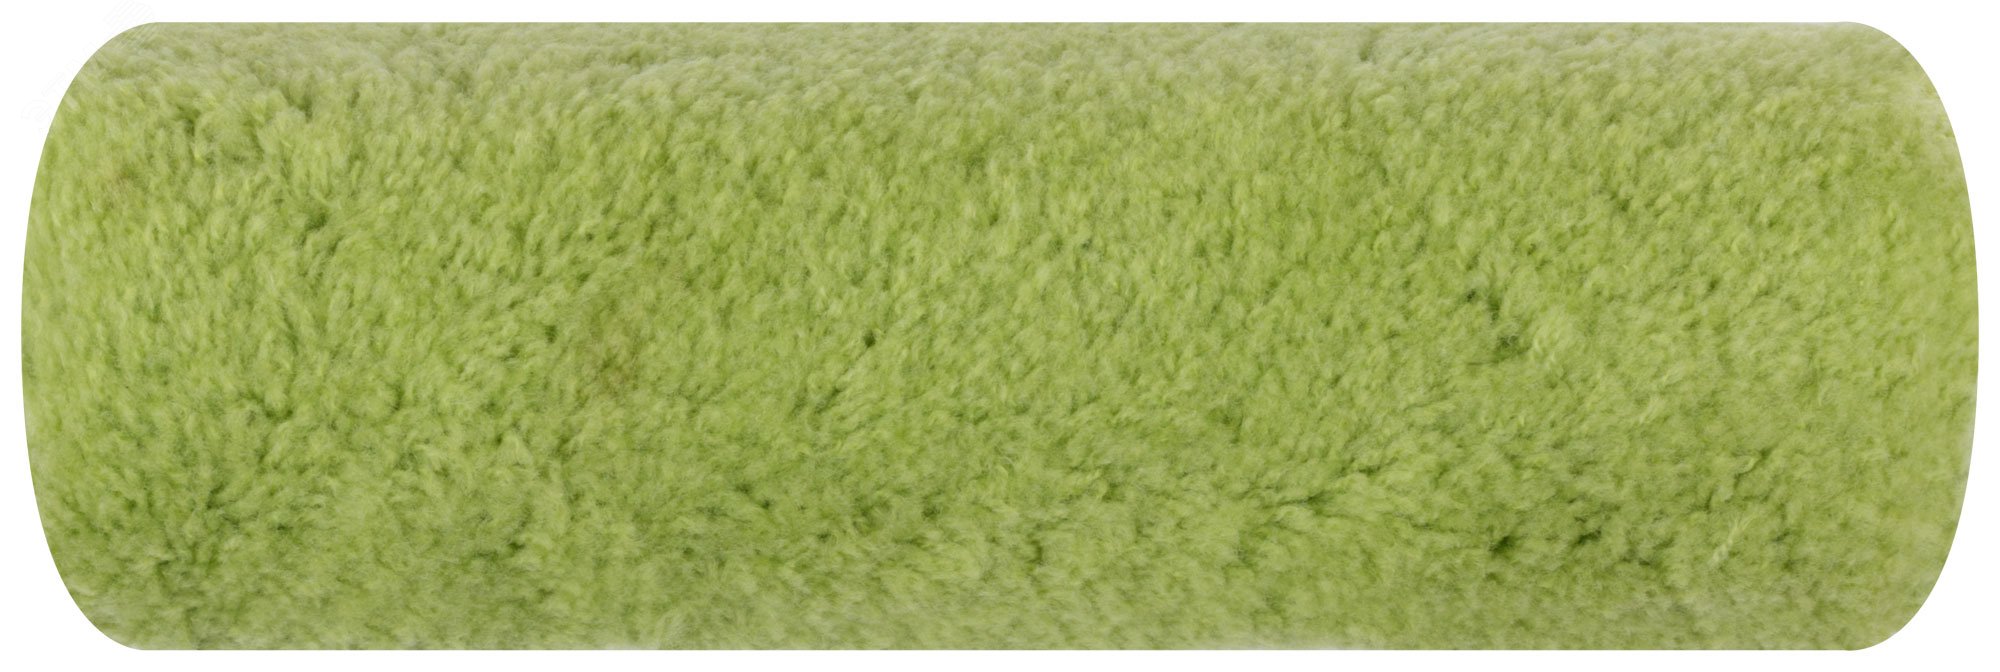 Ролик полиакриловый нитяной зеленый Профи, бюгель 8 мм, диаметр 58/94 мм, ворс 18 мм, 230 мм 2198 FIT - превью